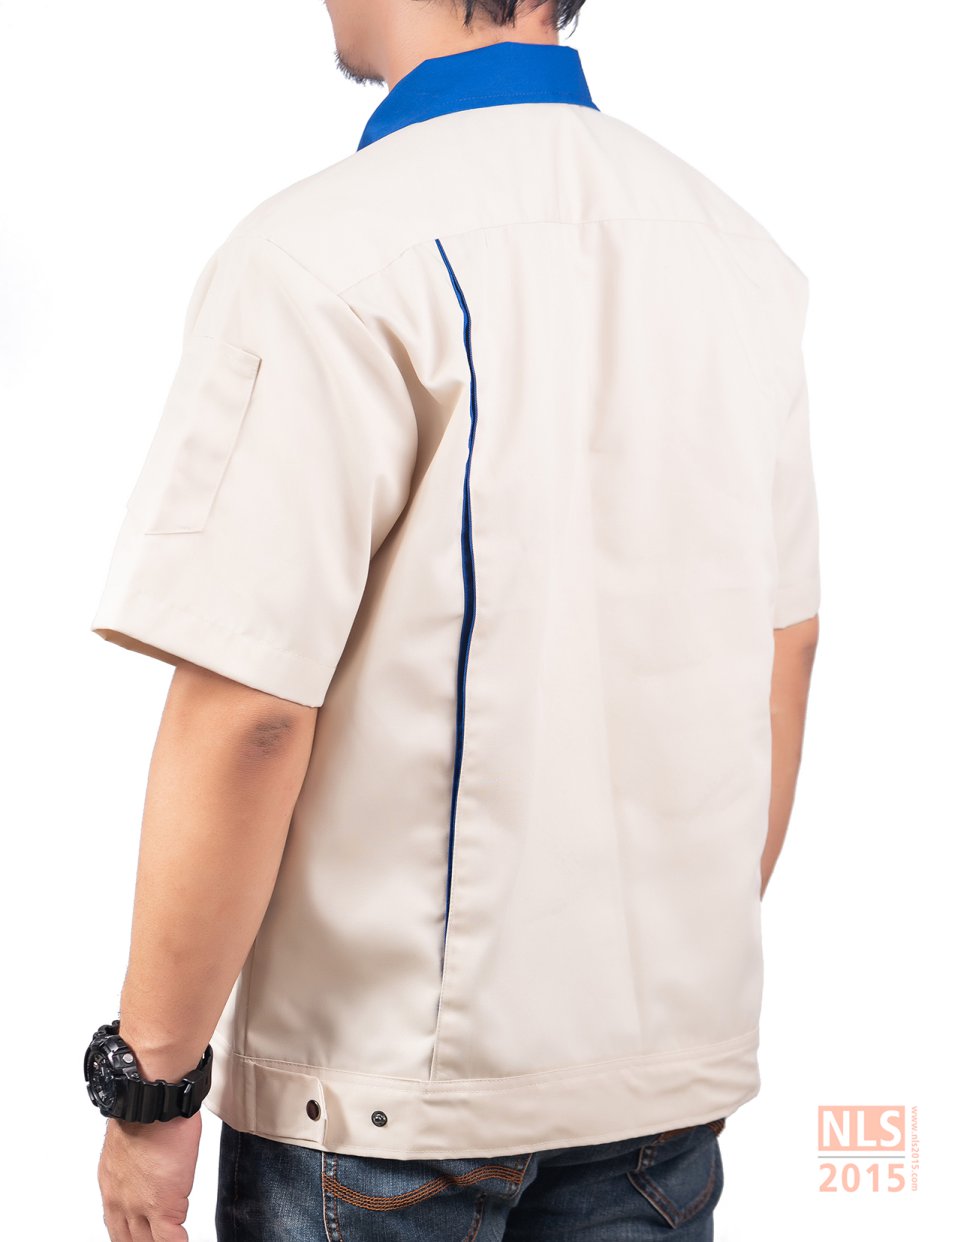 ยูนิฟอร์มพนักงานแขนสั้น ตัดต่อสองสี สาบหน้าเป็นซิปมีผ้าปิดซิปฟันกระดูก มีกระเป๋าเจาะล้วงข้าง กระดุมสแน็ปรูปที่ 